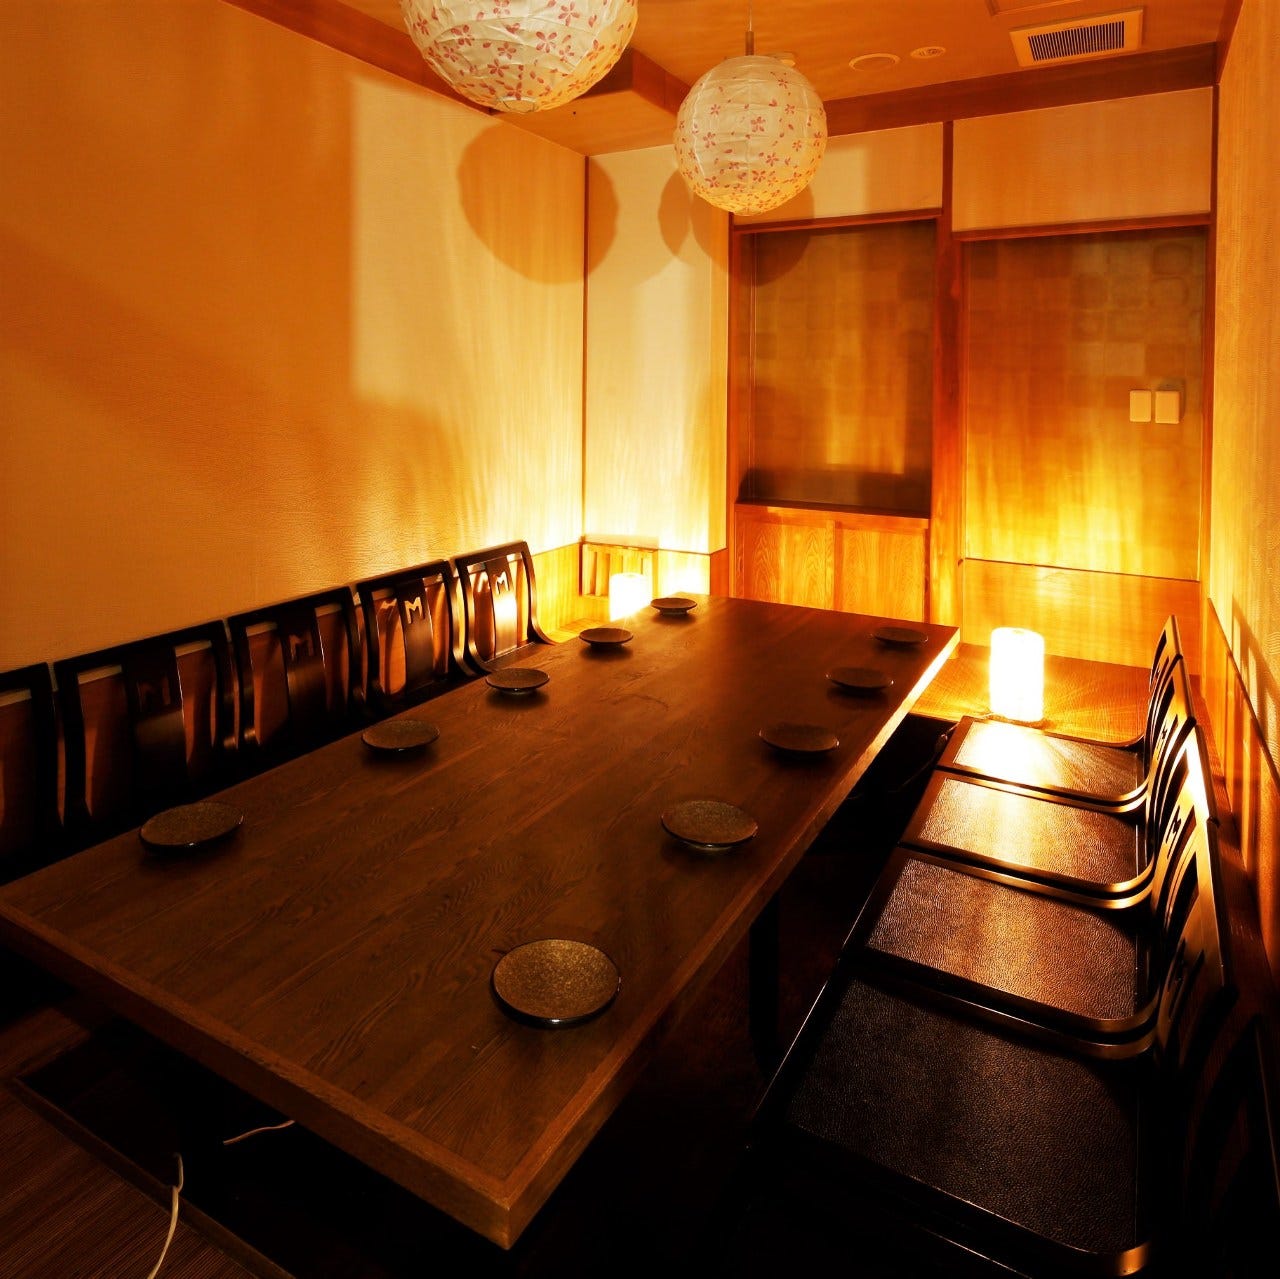 21年 最新グルメ 西梅田にある飲み食べ放題コースのあるお店 レストラン カフェ 居酒屋のネット予約 大阪版